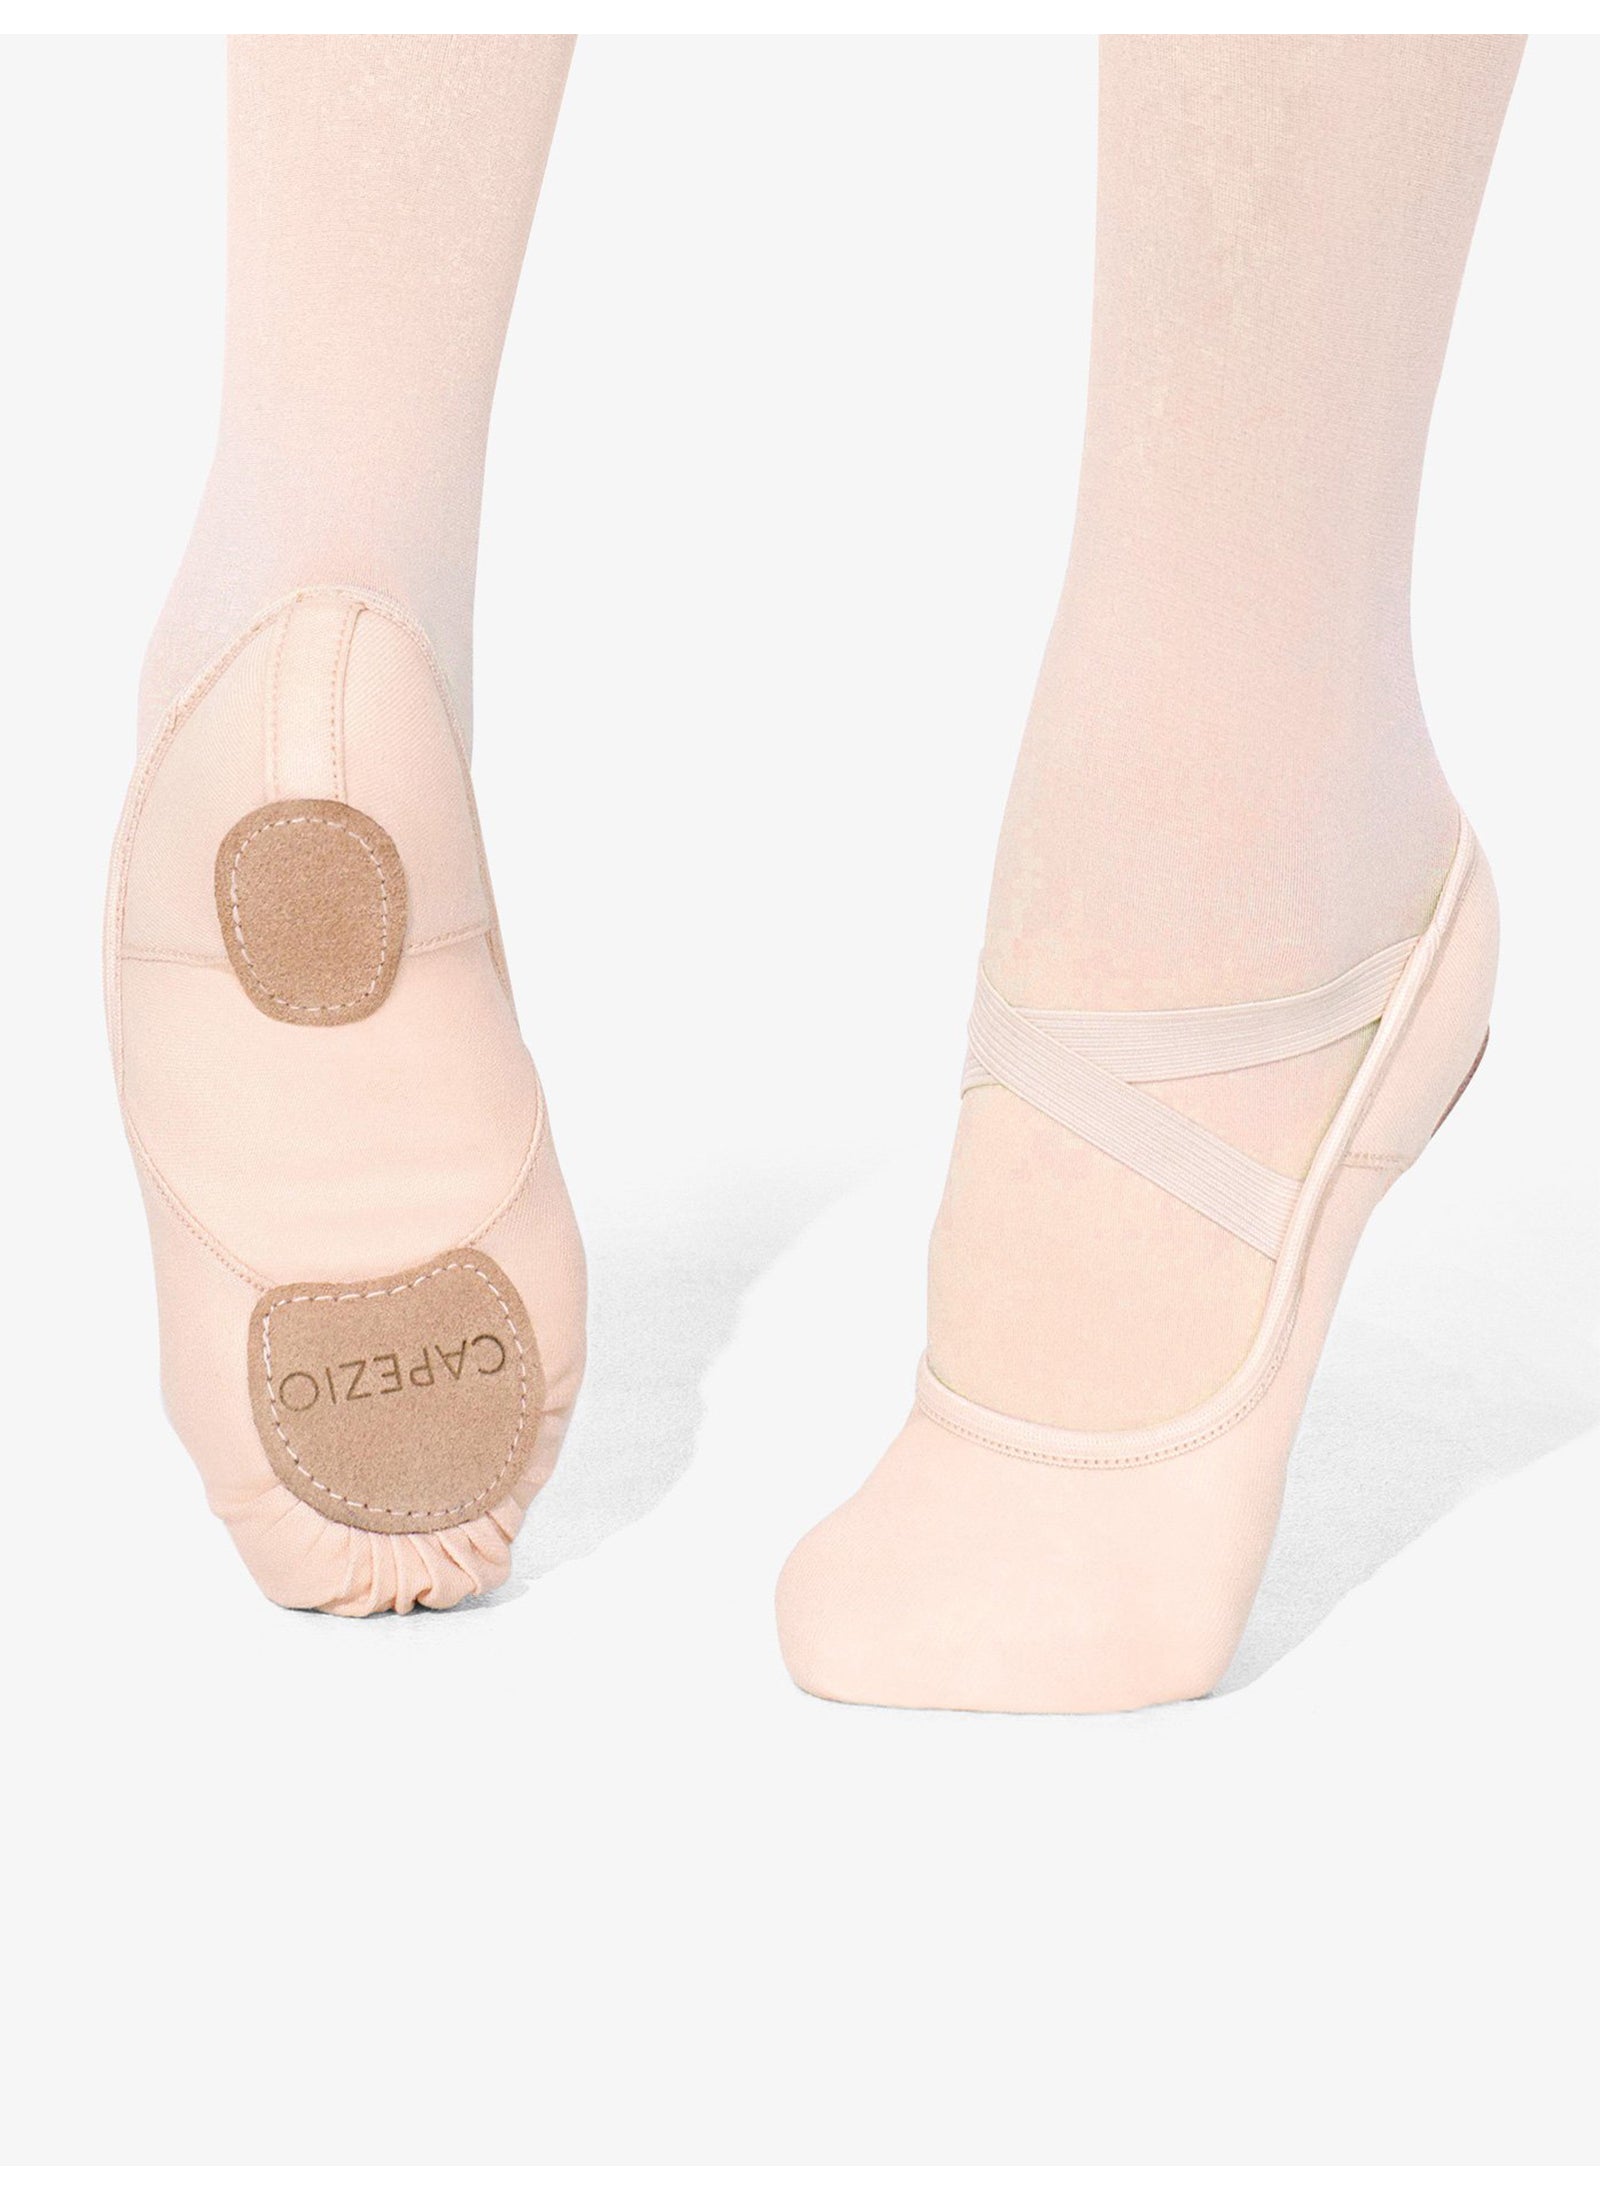 Capezio Ballet Shoes